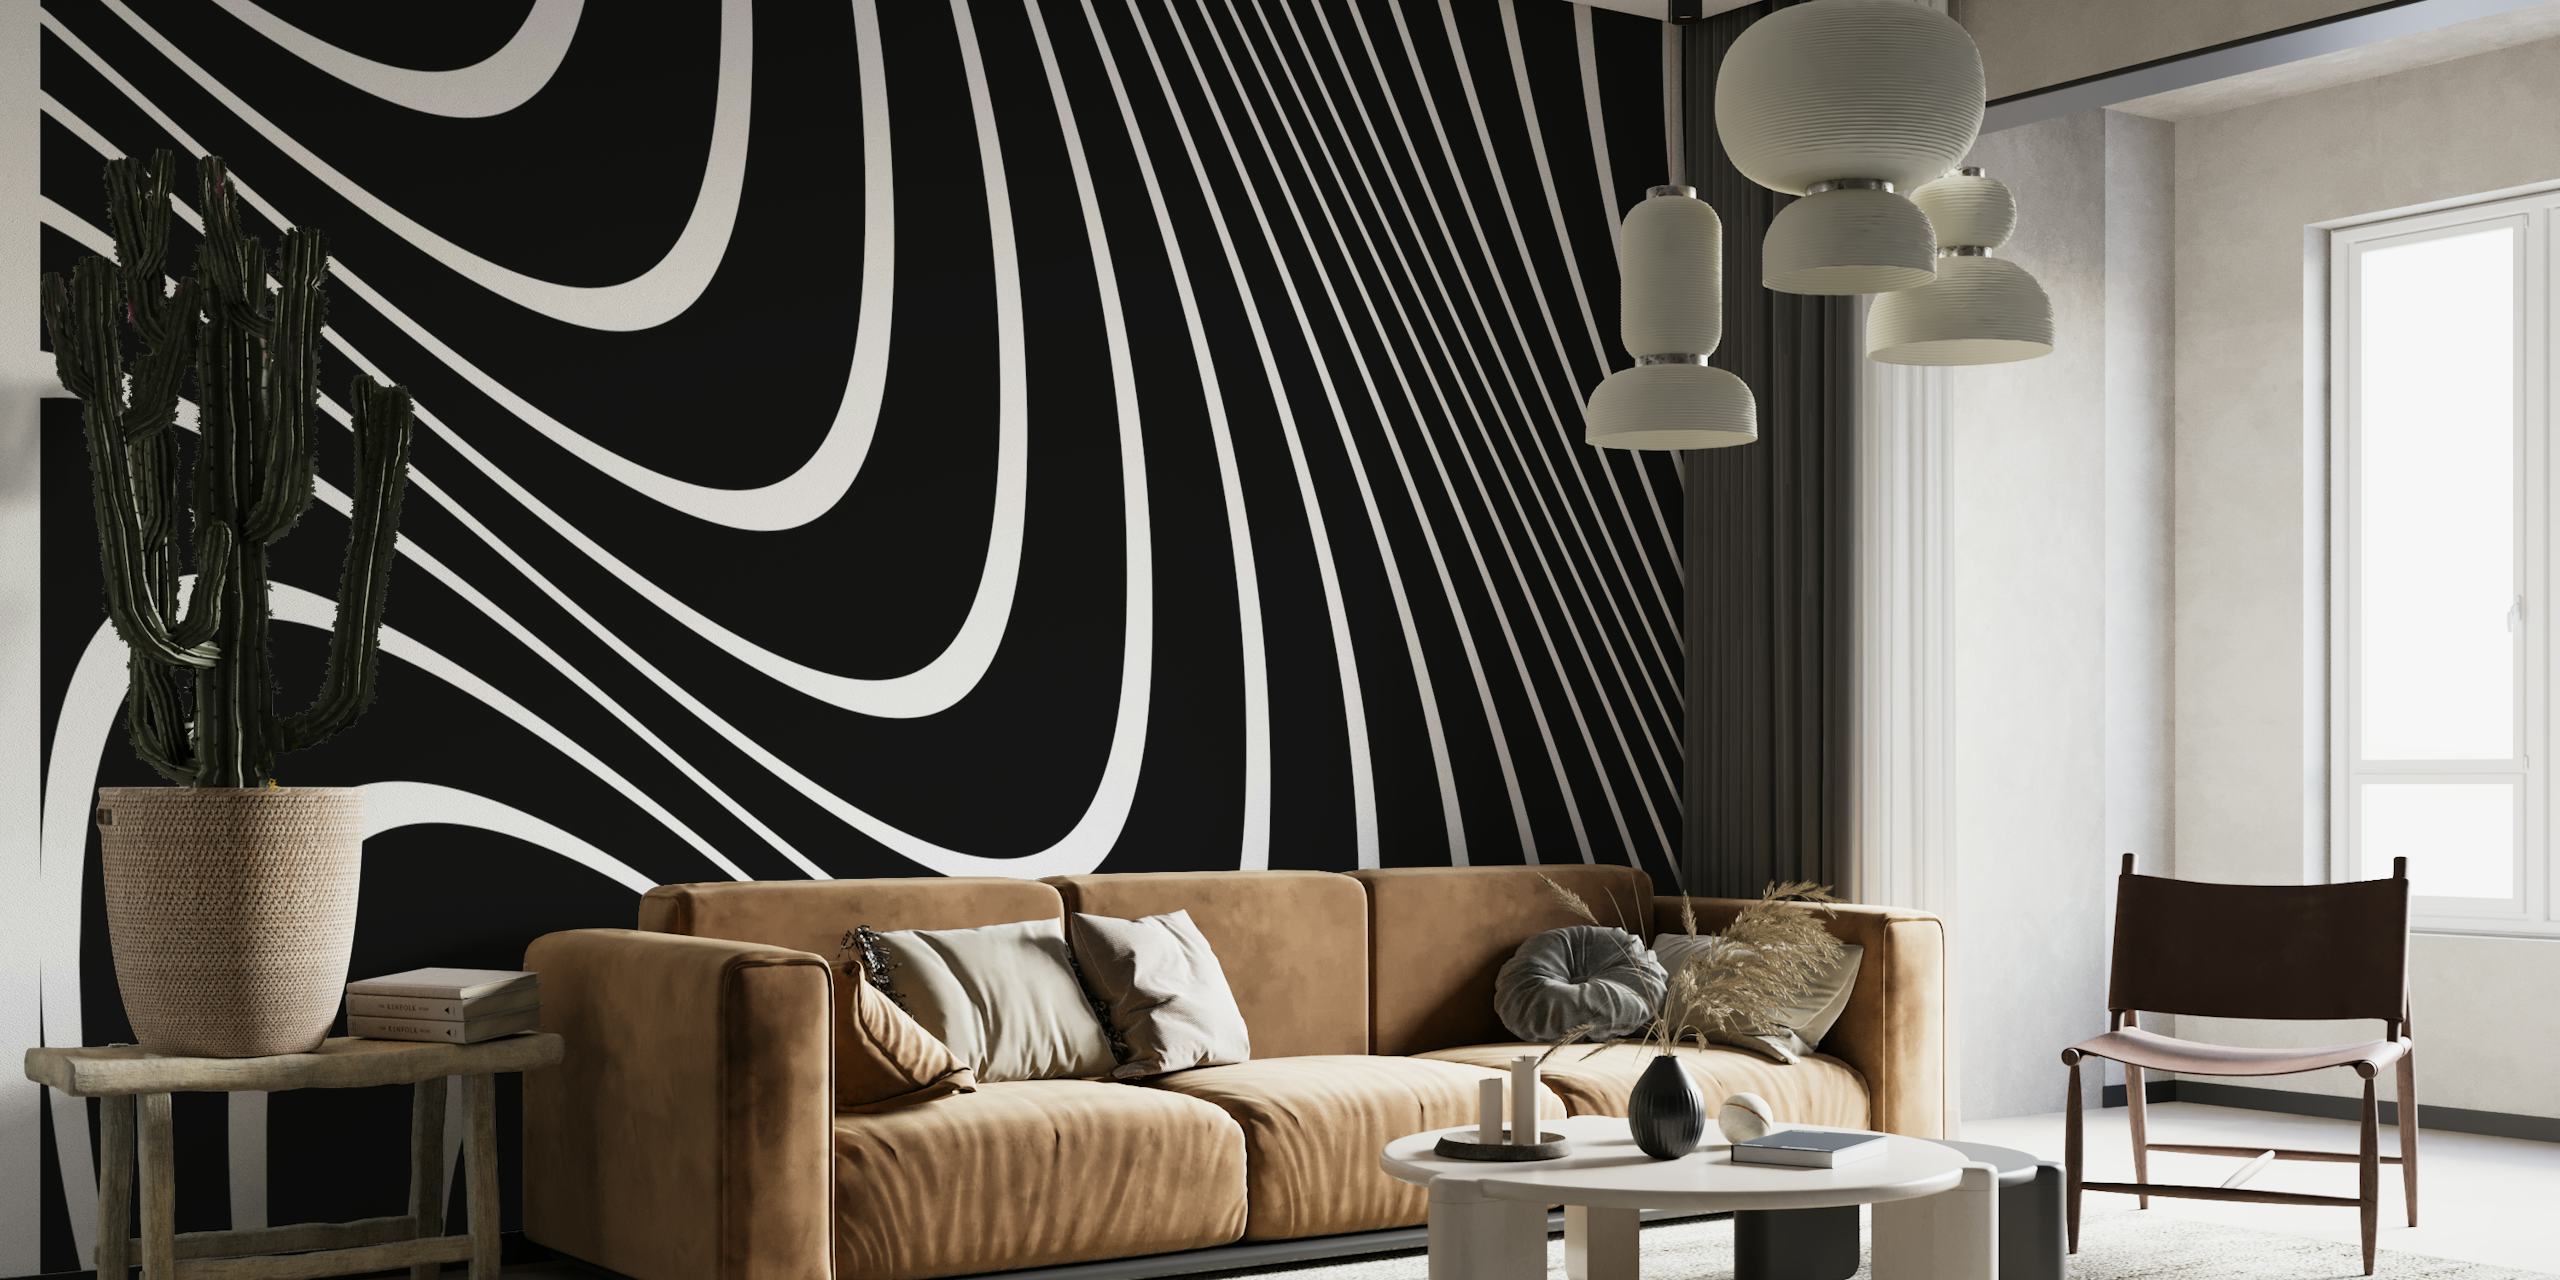 Abstrakt vægmaleri i sorte og hvide linjer til moderne vægindretning